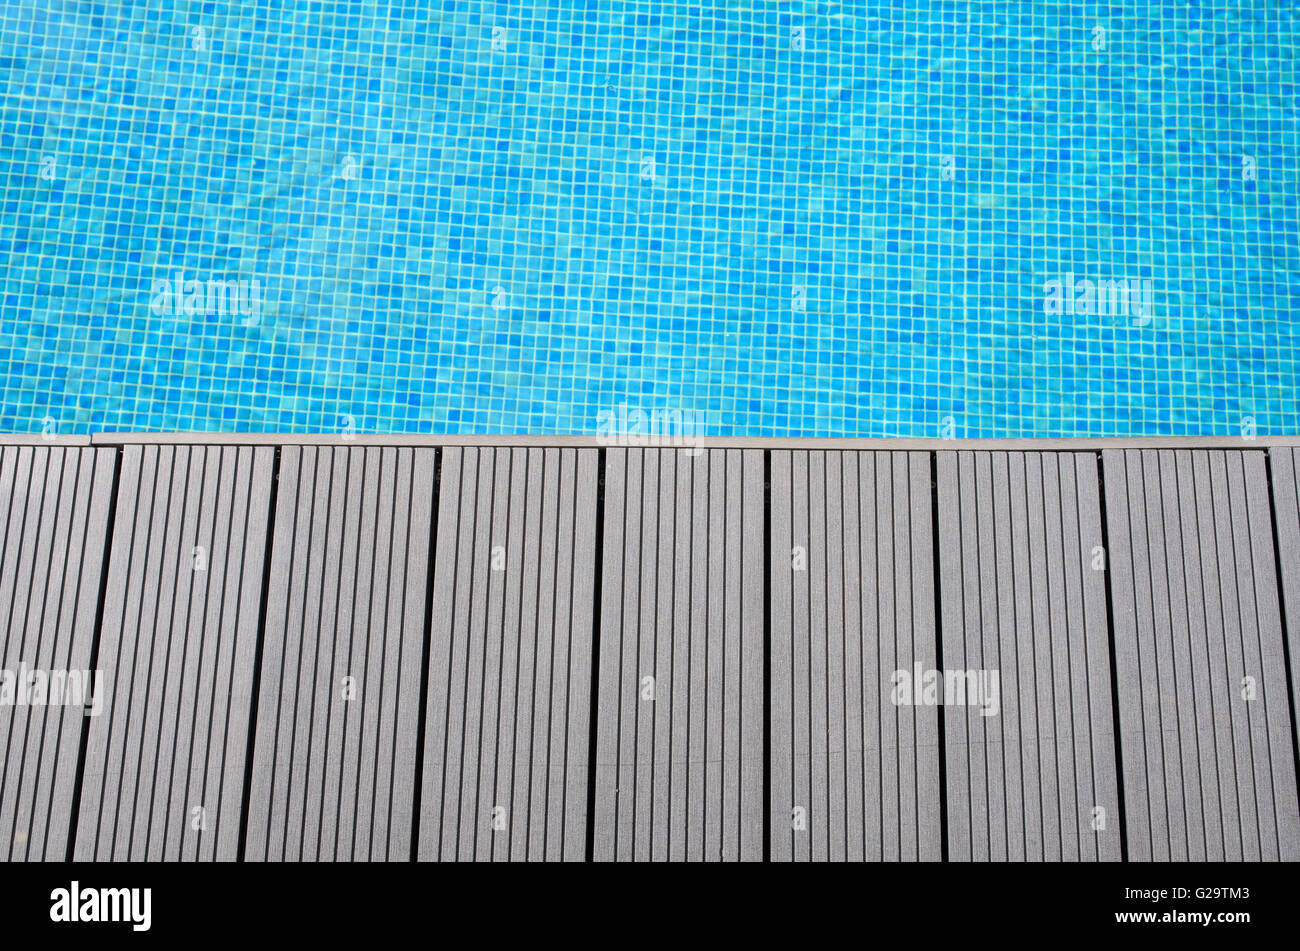 Decking - terrasse au bord d'une piscine en mosaïque bleue Banque D'Images